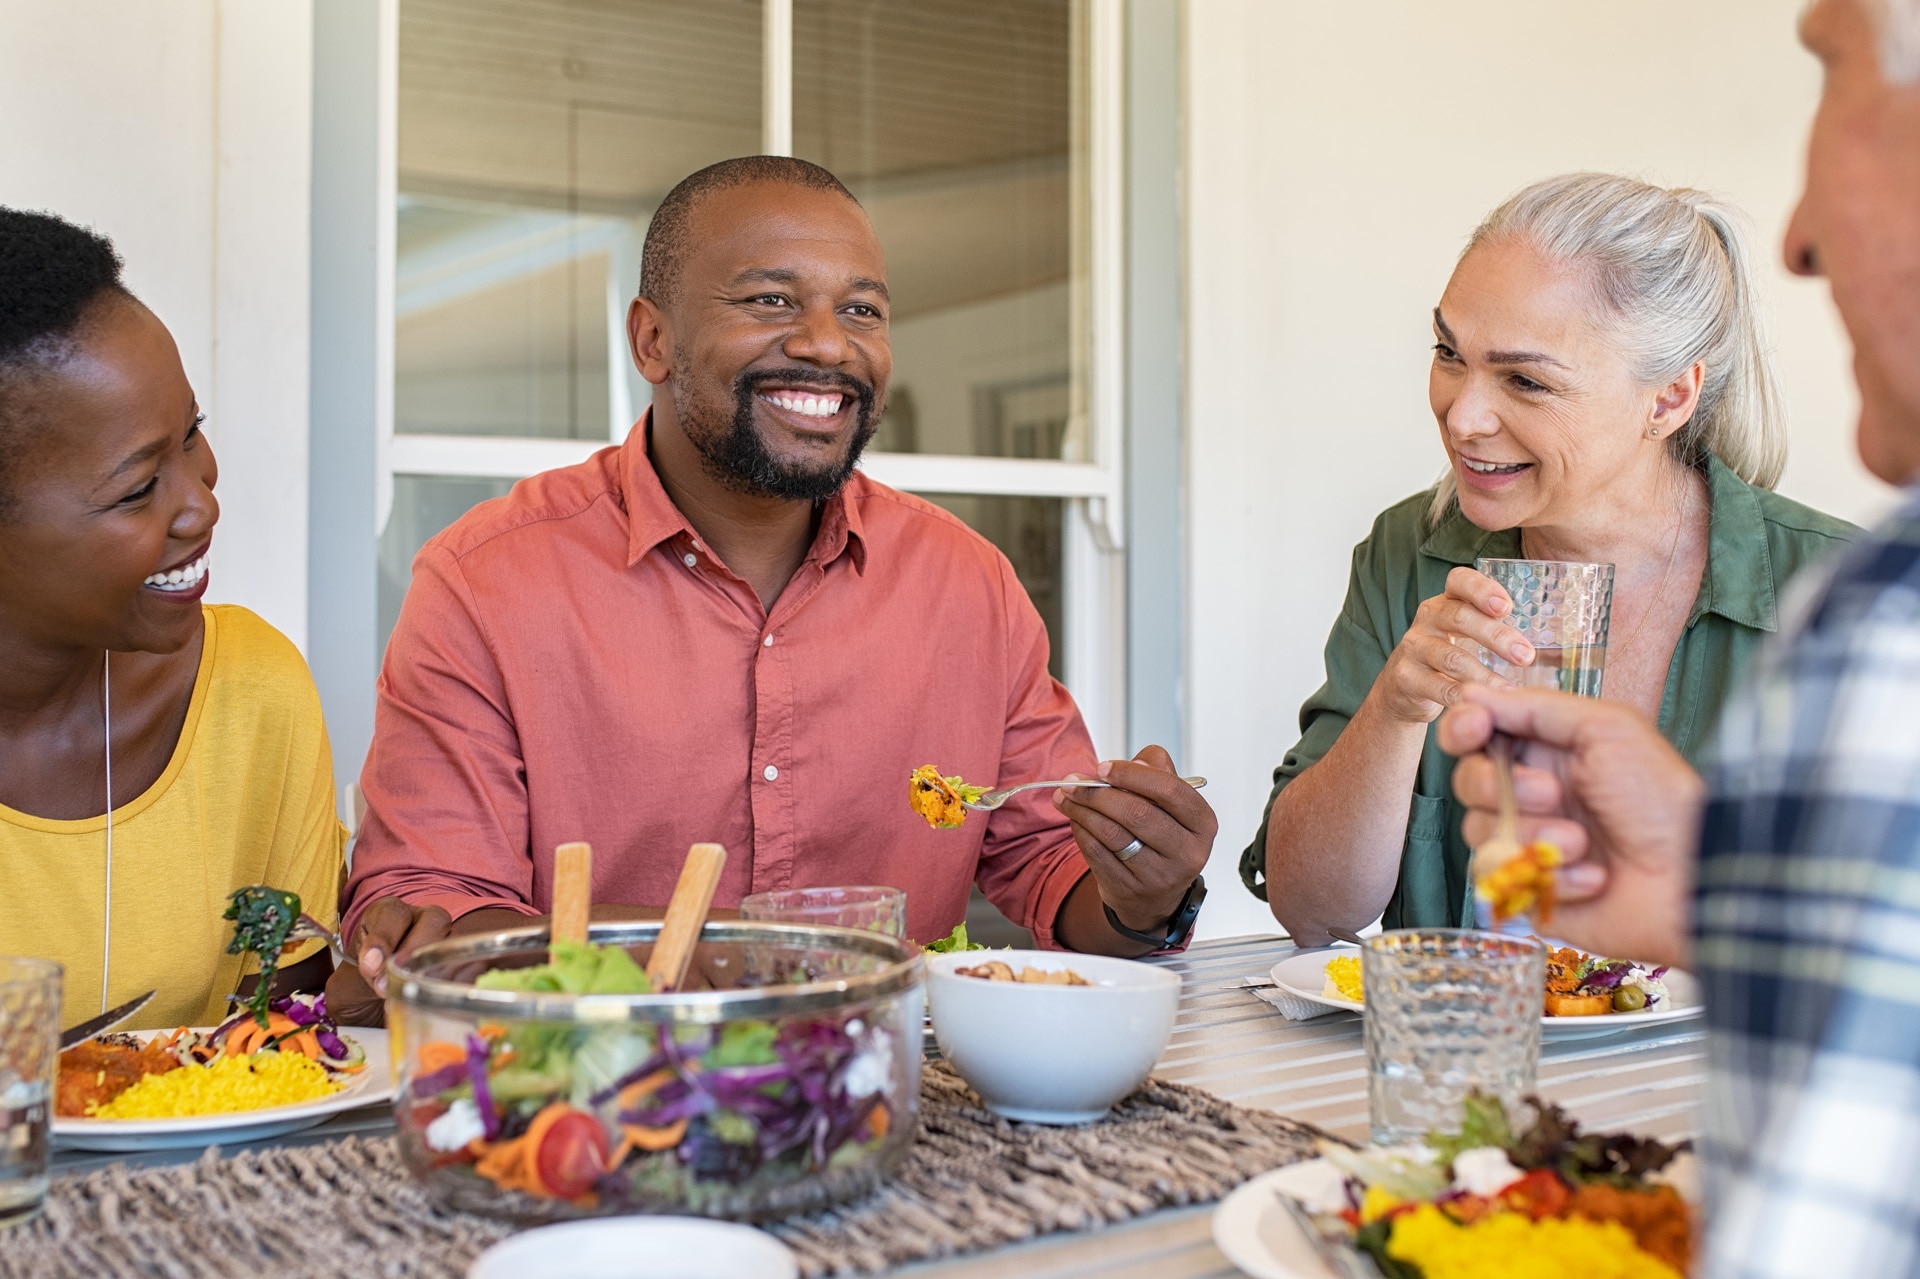 Amici felici e sorridenti che pranzano insieme a casa. Persone mature di diverse etnie che festeggiano un'occasione felice mangiando cibo sano. Gruppo di coppie di anziani e coppia di colore che parlano durante un pasto.